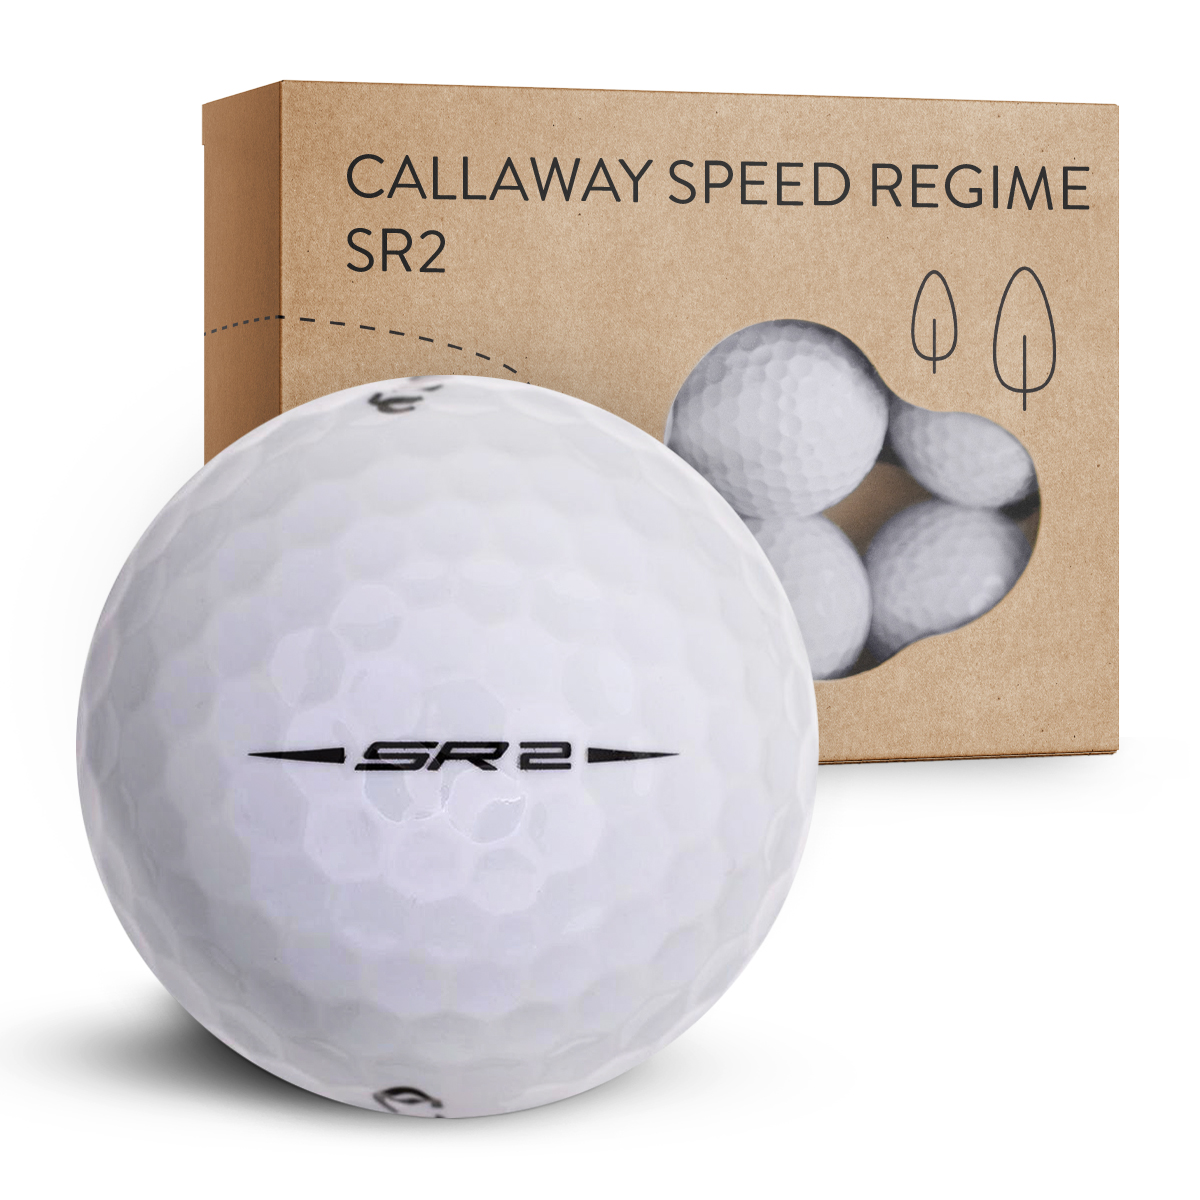 Callaway Speed Regime SR2